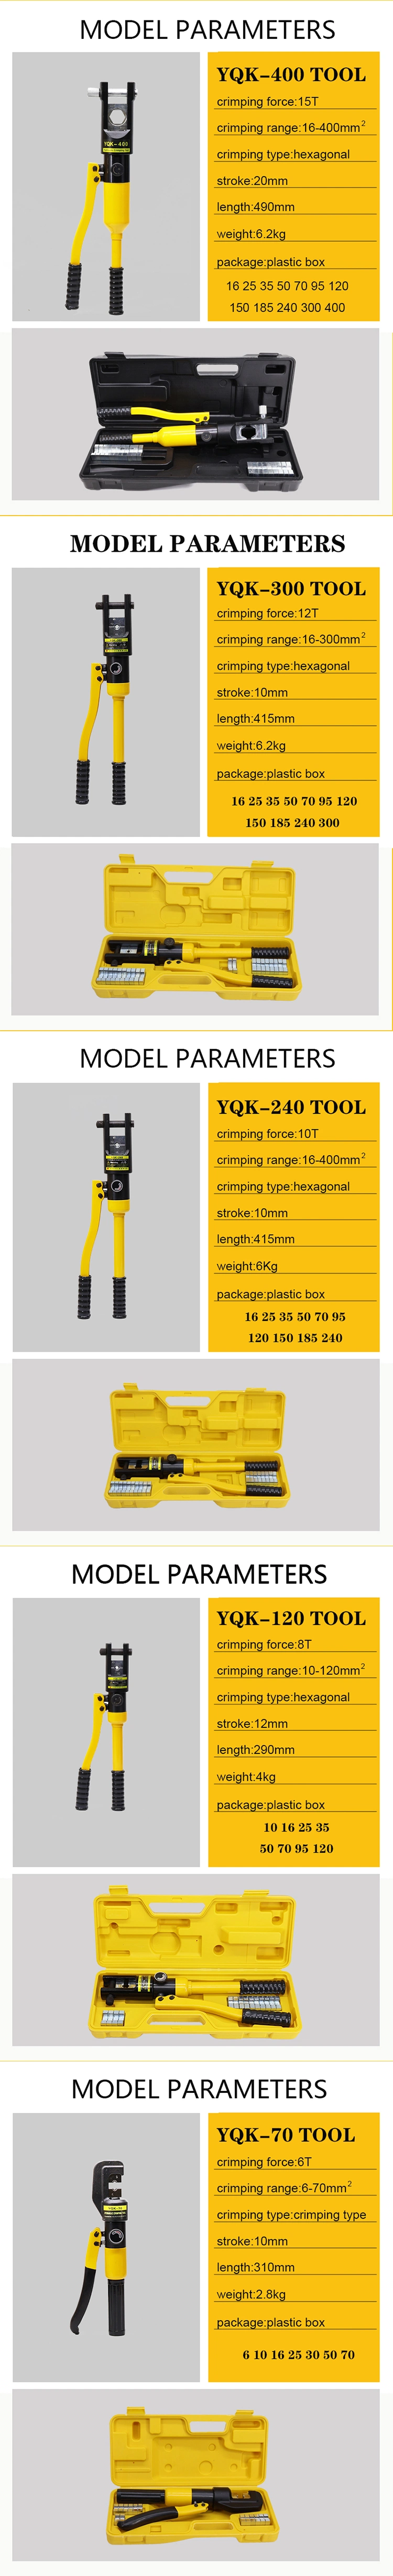 Yqk-240 Hydraulic Crimping Tool Copper-Al Terminal Cable Lug Manual Hydraulic Crimping Tool